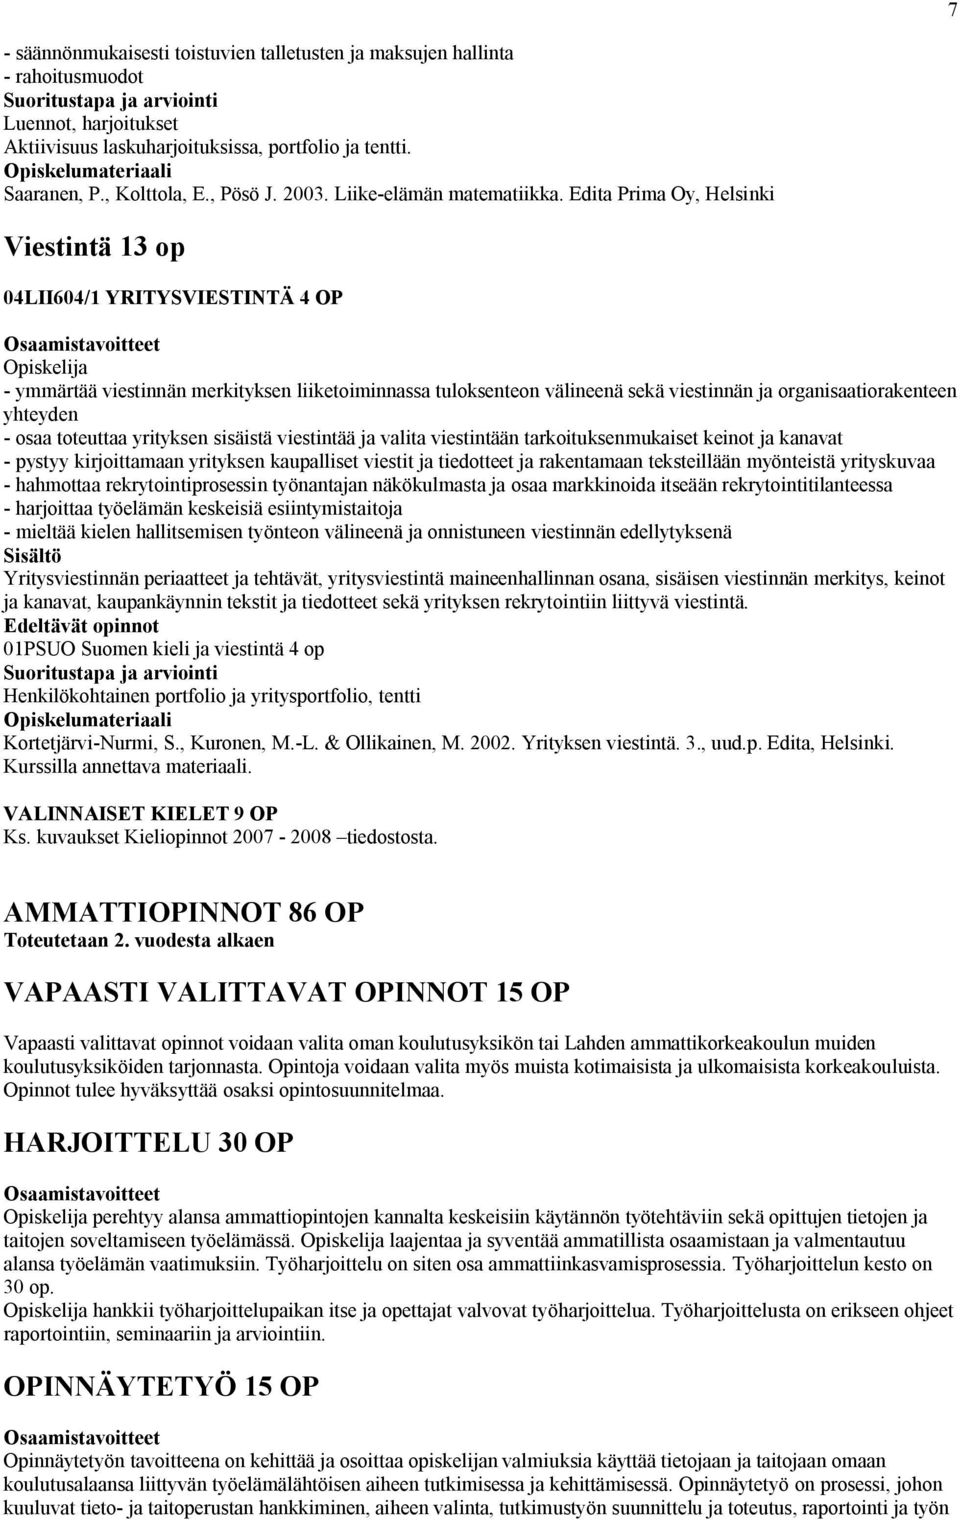 Edita Prima Oy, Helsinki Viestintä 13 op 04LII604/1 YRITYSVIESTINTÄ 4 OP - ymmärtää viestinnän merkityksen liiketoiminnassa tuloksenteon välineenä sekä viestinnän ja organisaatiorakenteen yhteyden -